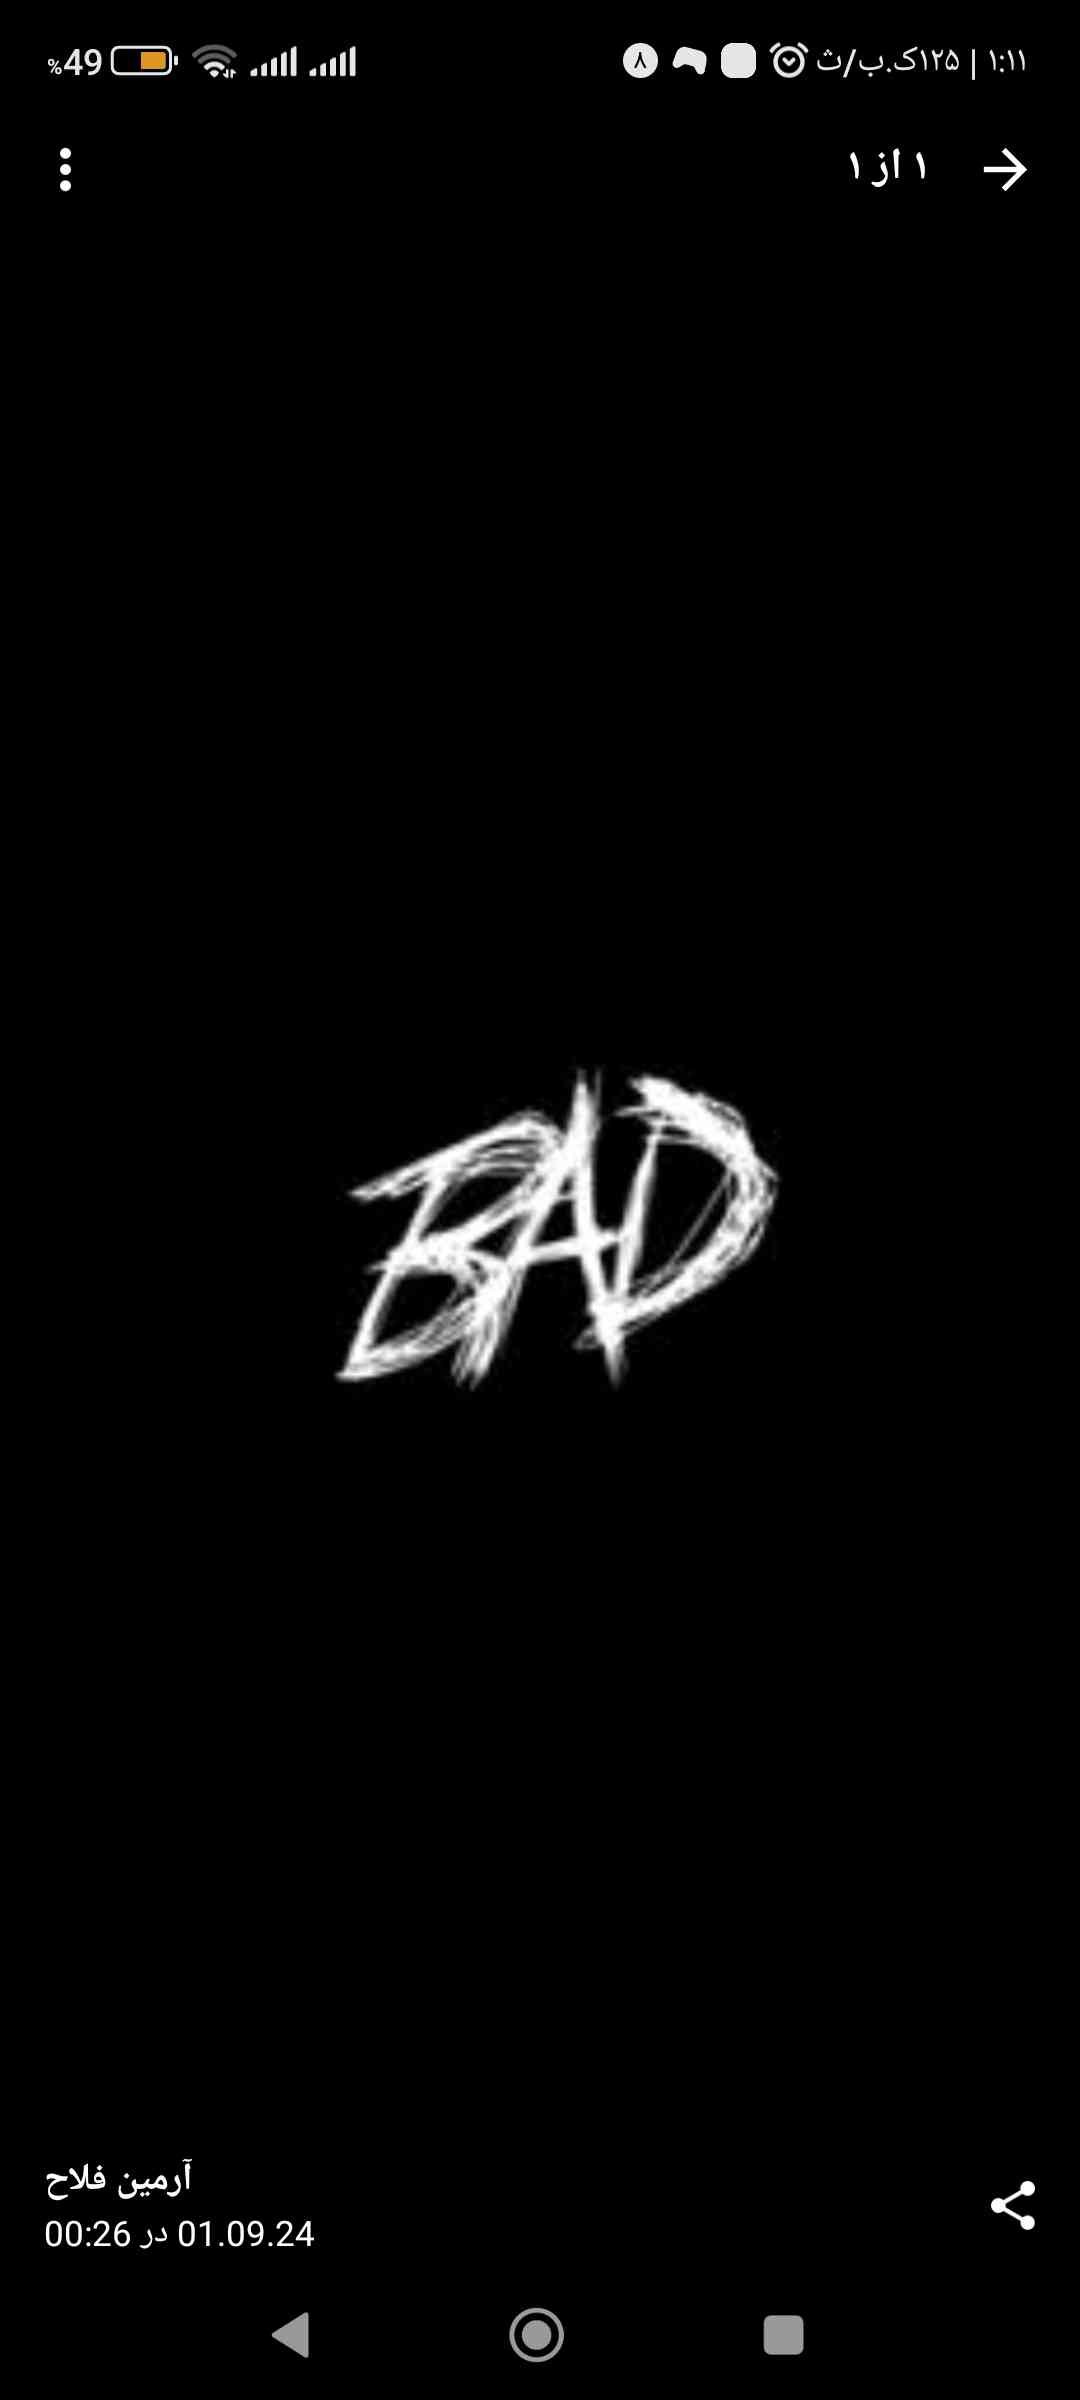 BAD bad